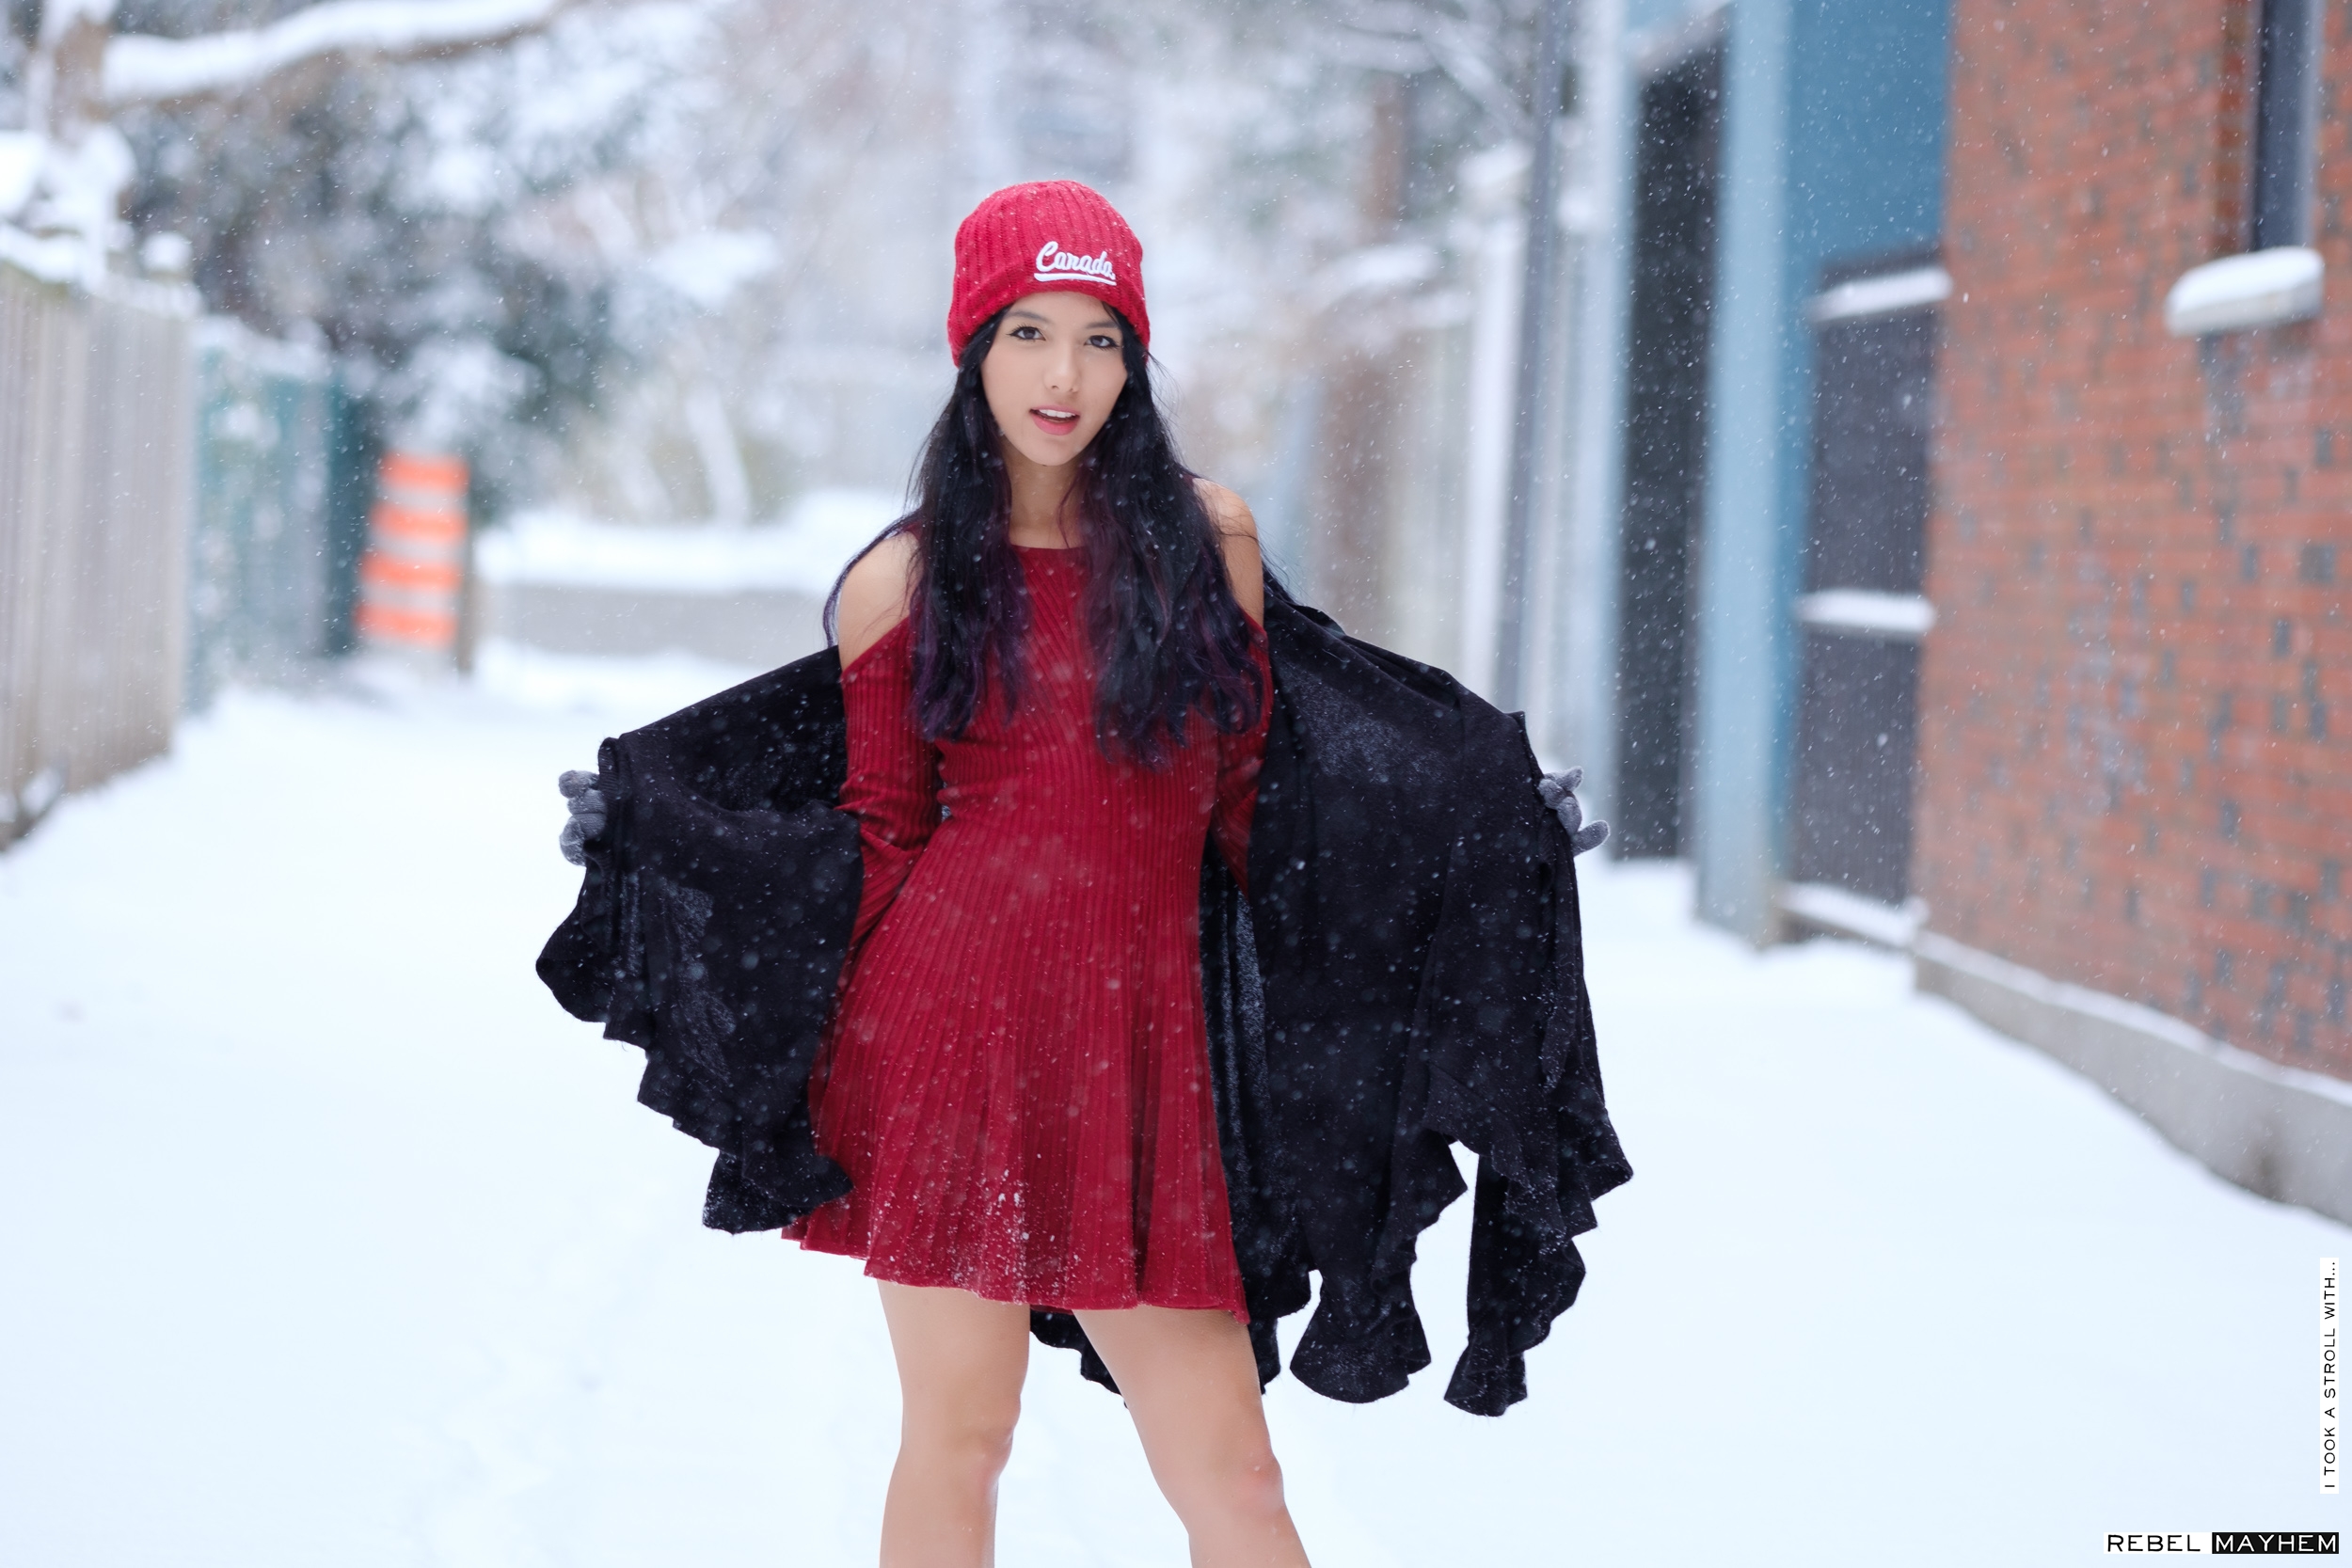 Long Hair Black Hair Women Women Outdoors Outdoors Snow Dress Red Dress Standing Asian 2500x1667